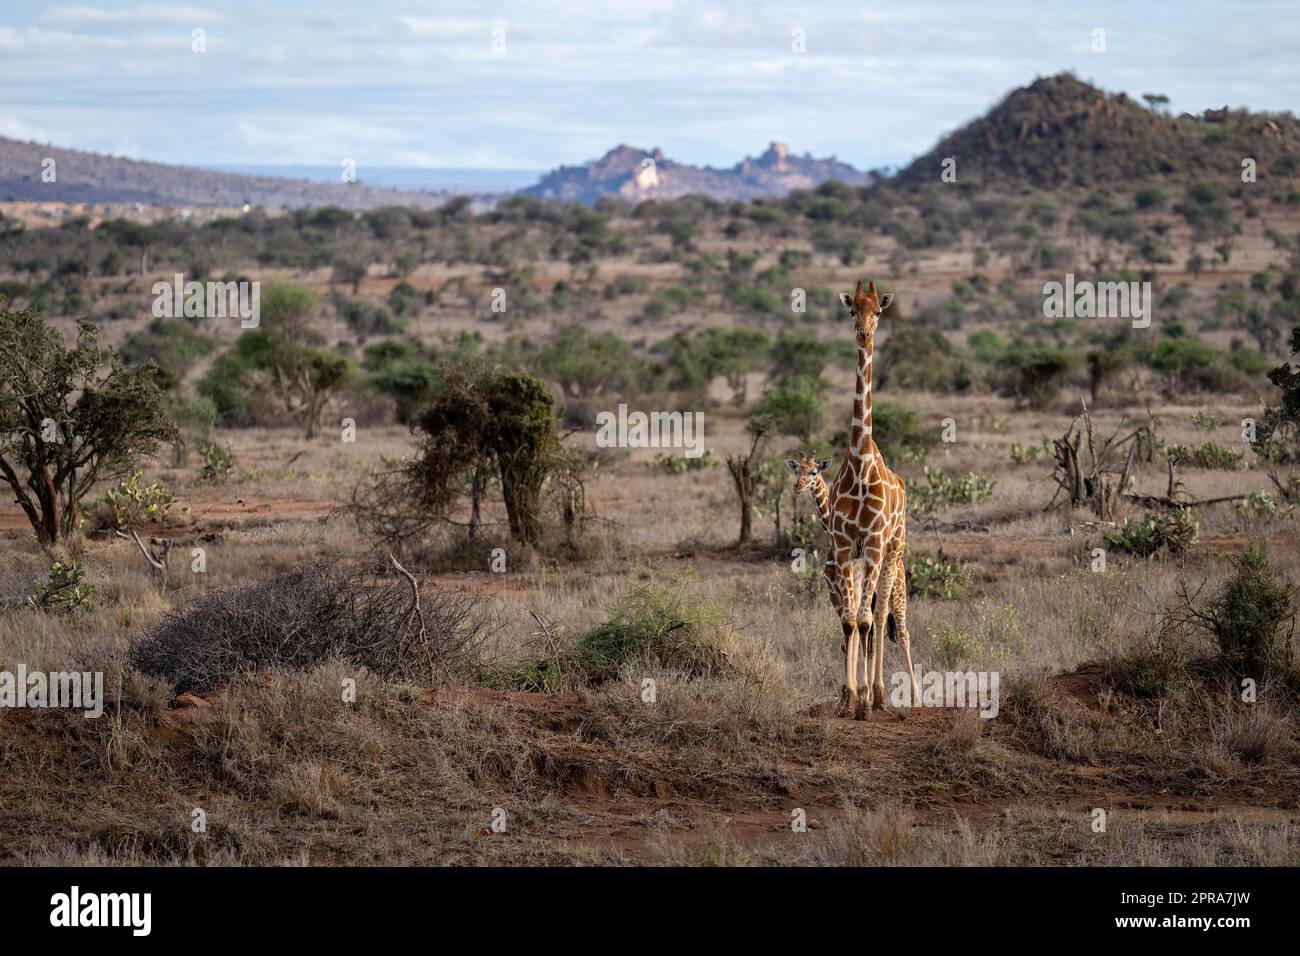 Girafe réticulée debout dans une savane au veau Banque D'Images